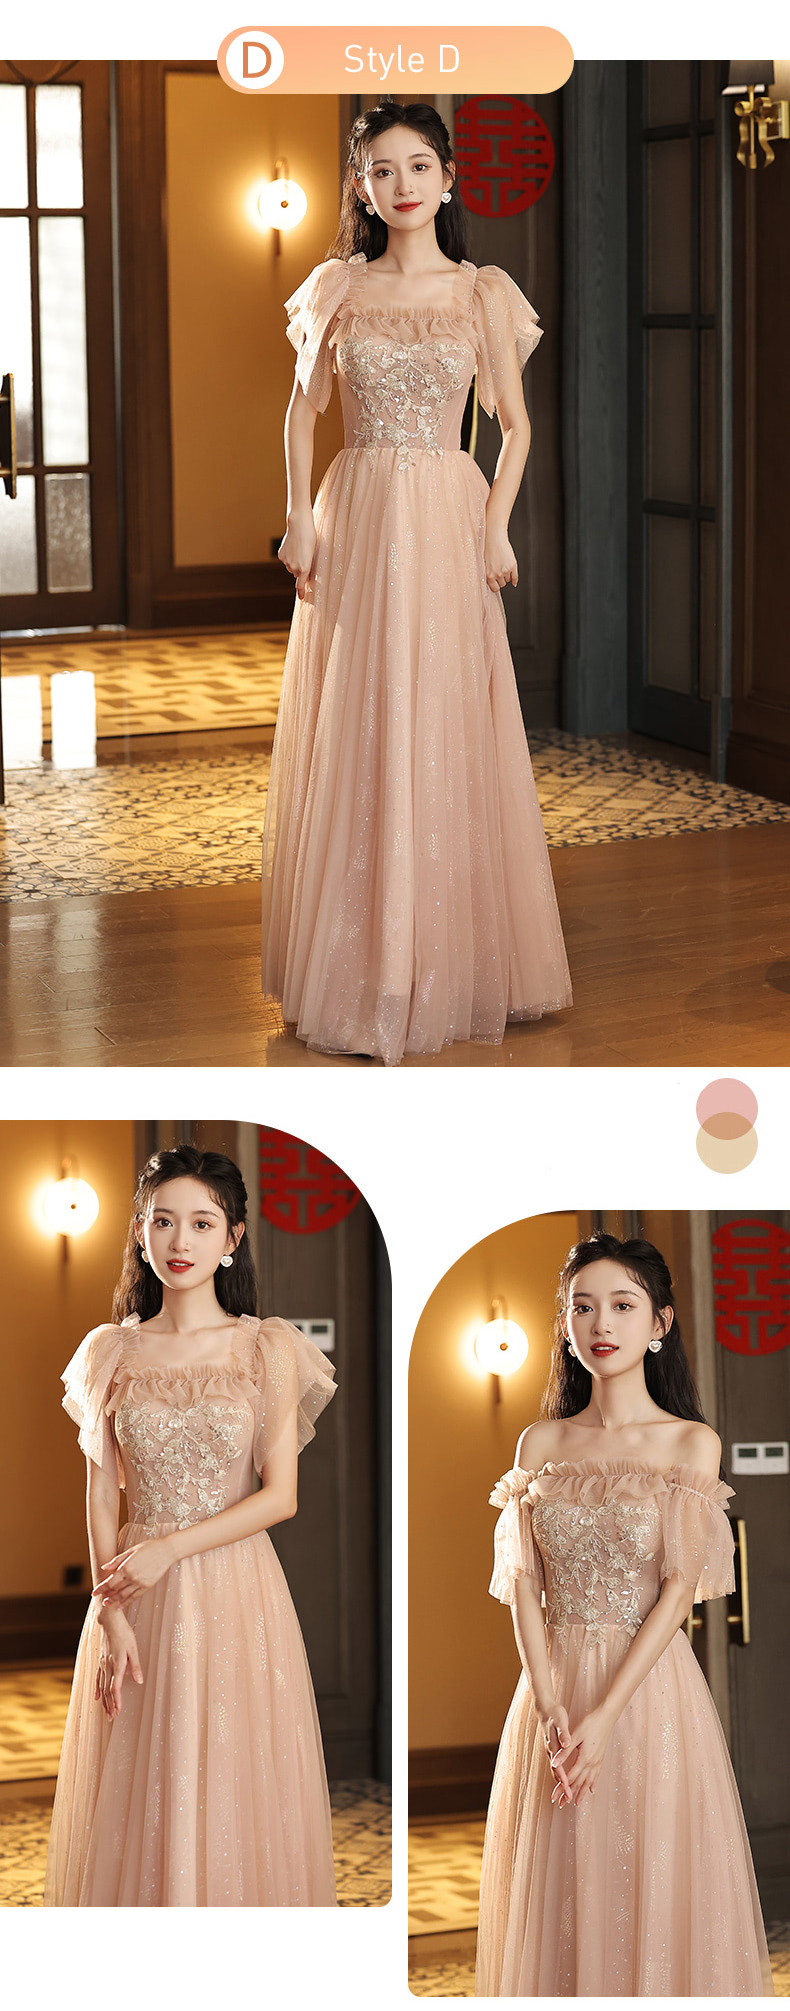 Stylish-Embroidery-Bridesmaid-Maxi-Dress-Elegance-Wedding-Gown20.jpg